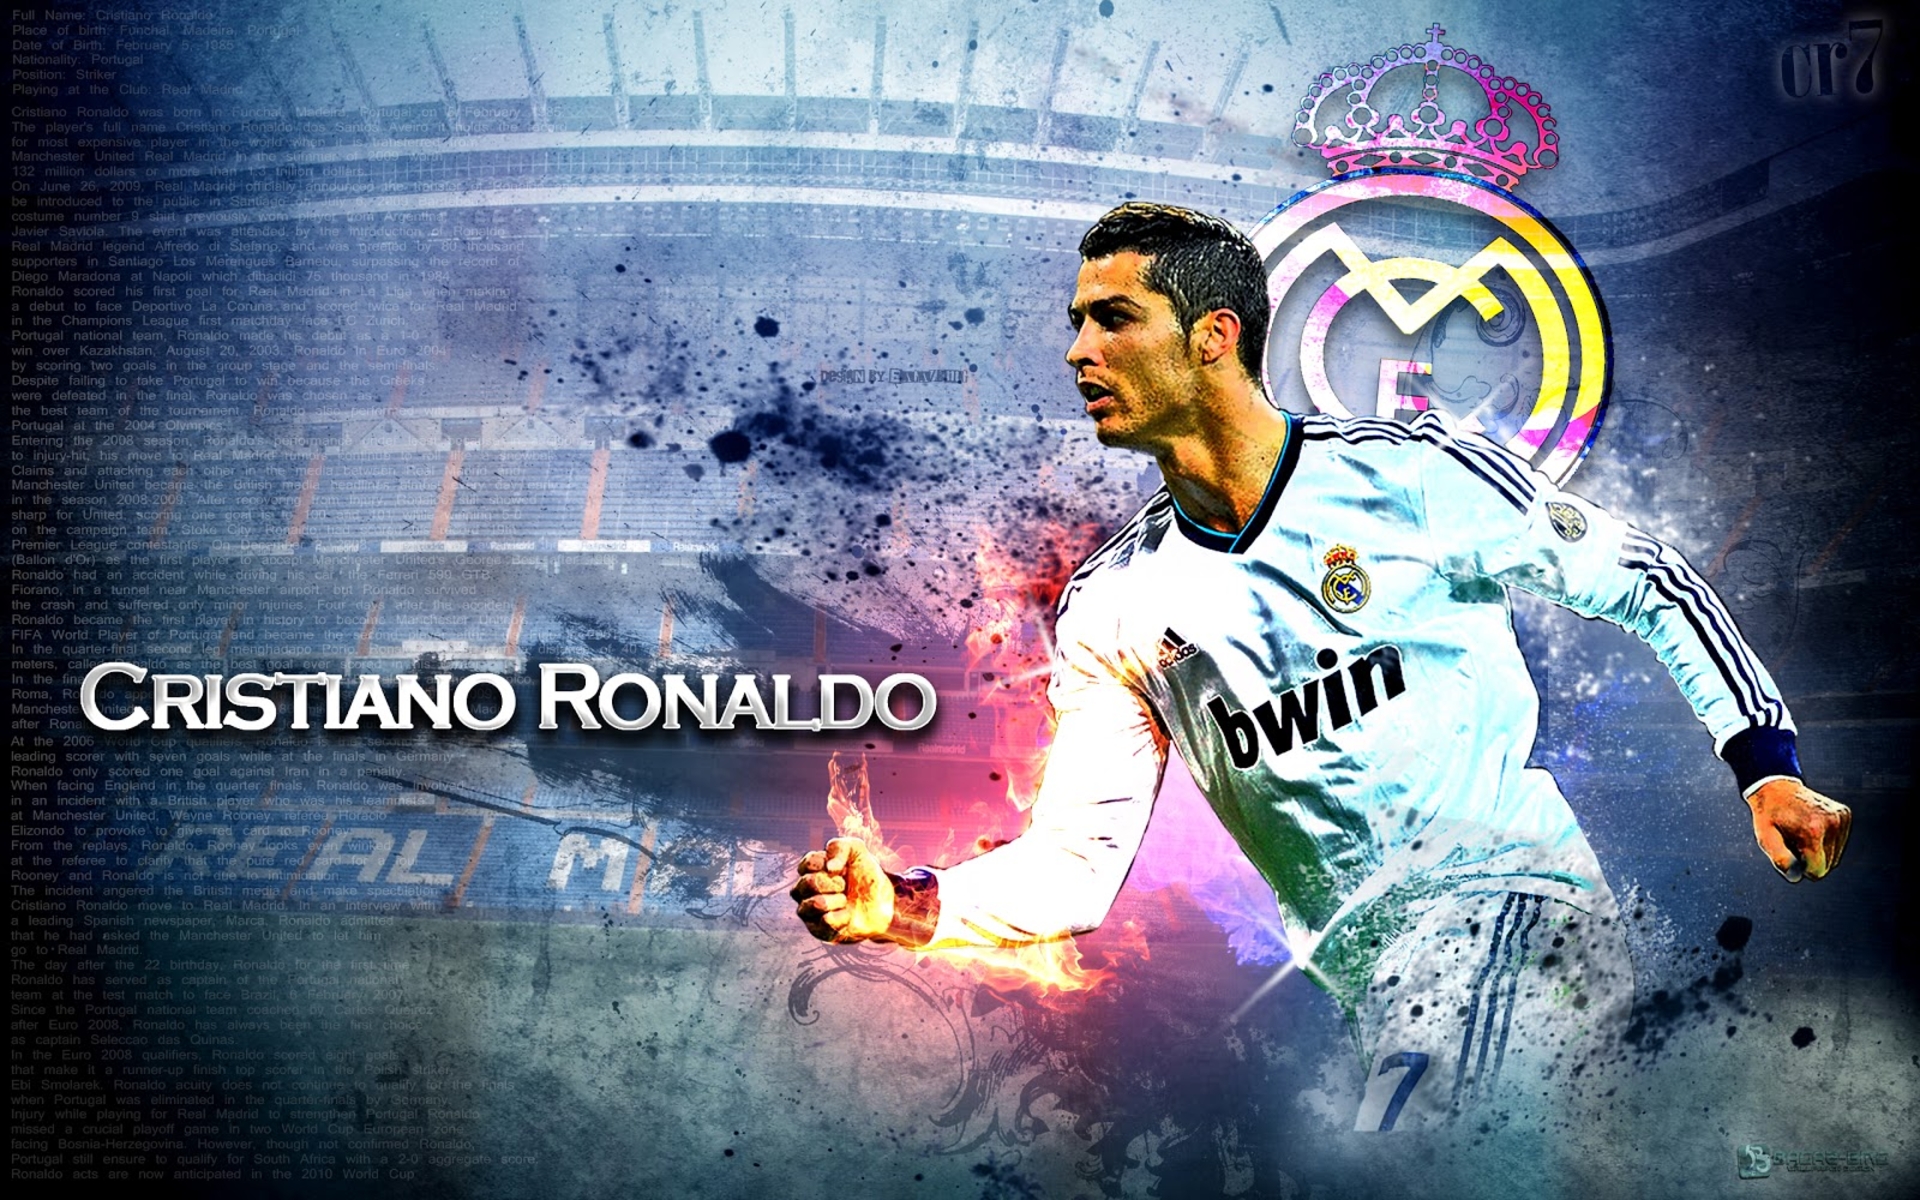 Cristiano Ronaldo HD Wallpaper - High Definition, High Resolution HD  Wallpapers : High Definition, High Resolution HD Wallpapers